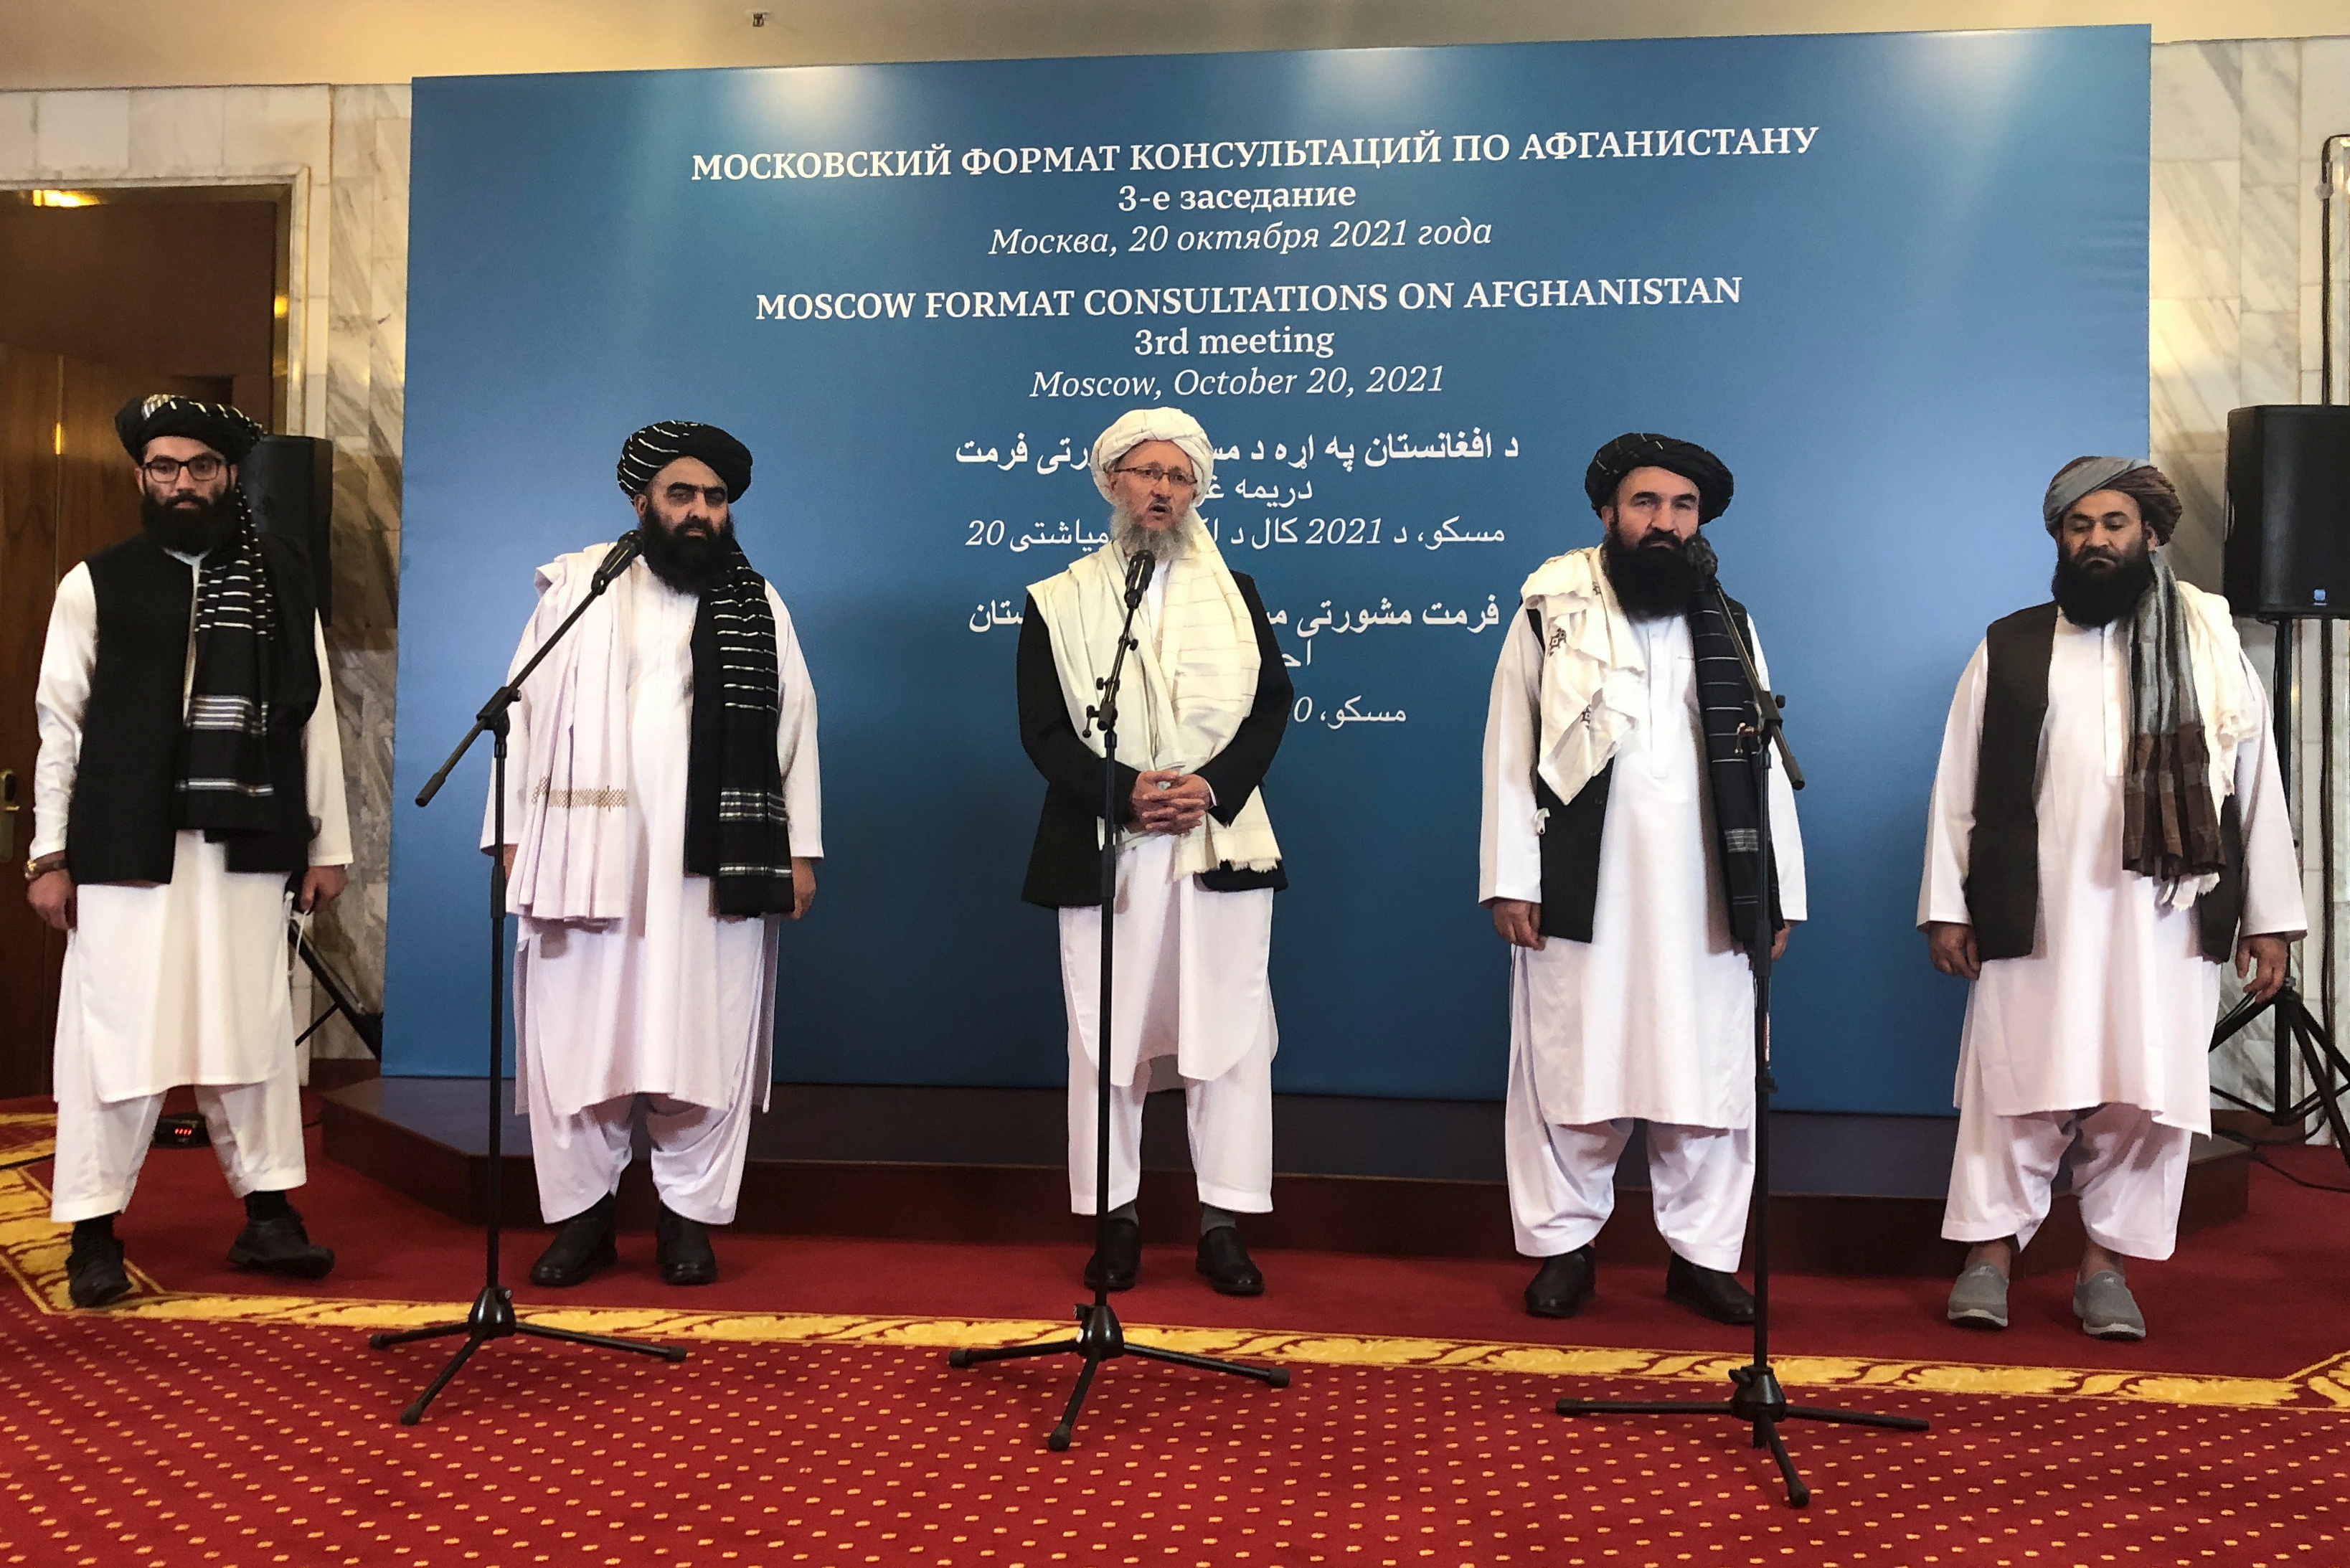 El Kremlin le abre las puertas a los talibanes: Rusia acreditó al primer diplomático del régimen afgano